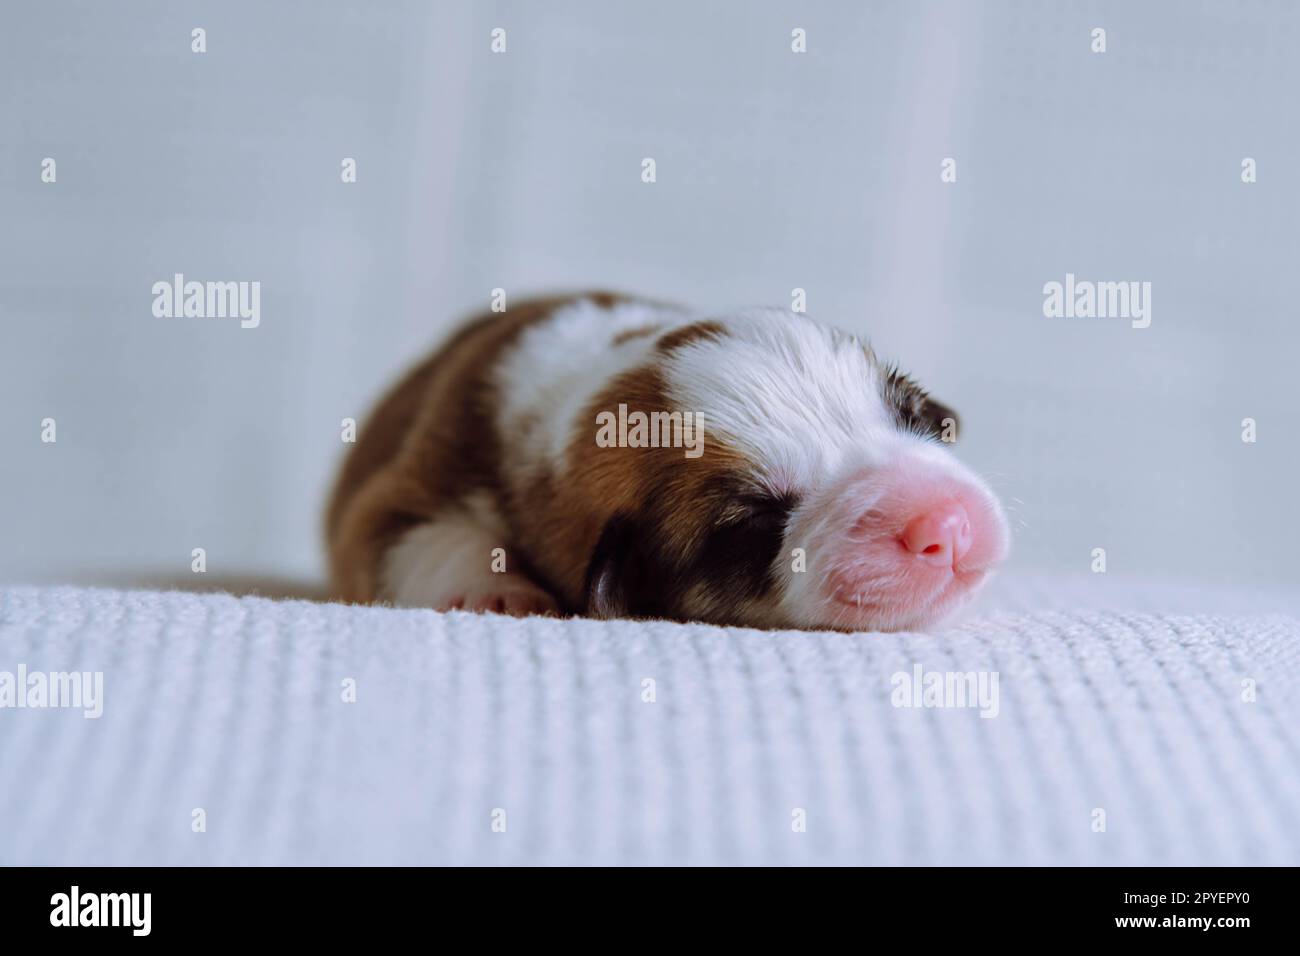 Gros plan adorable chiot corgi gallois tricolore endormi couché sur une couverture blanche douce. Doux rêves et détente après le repas Banque D'Images